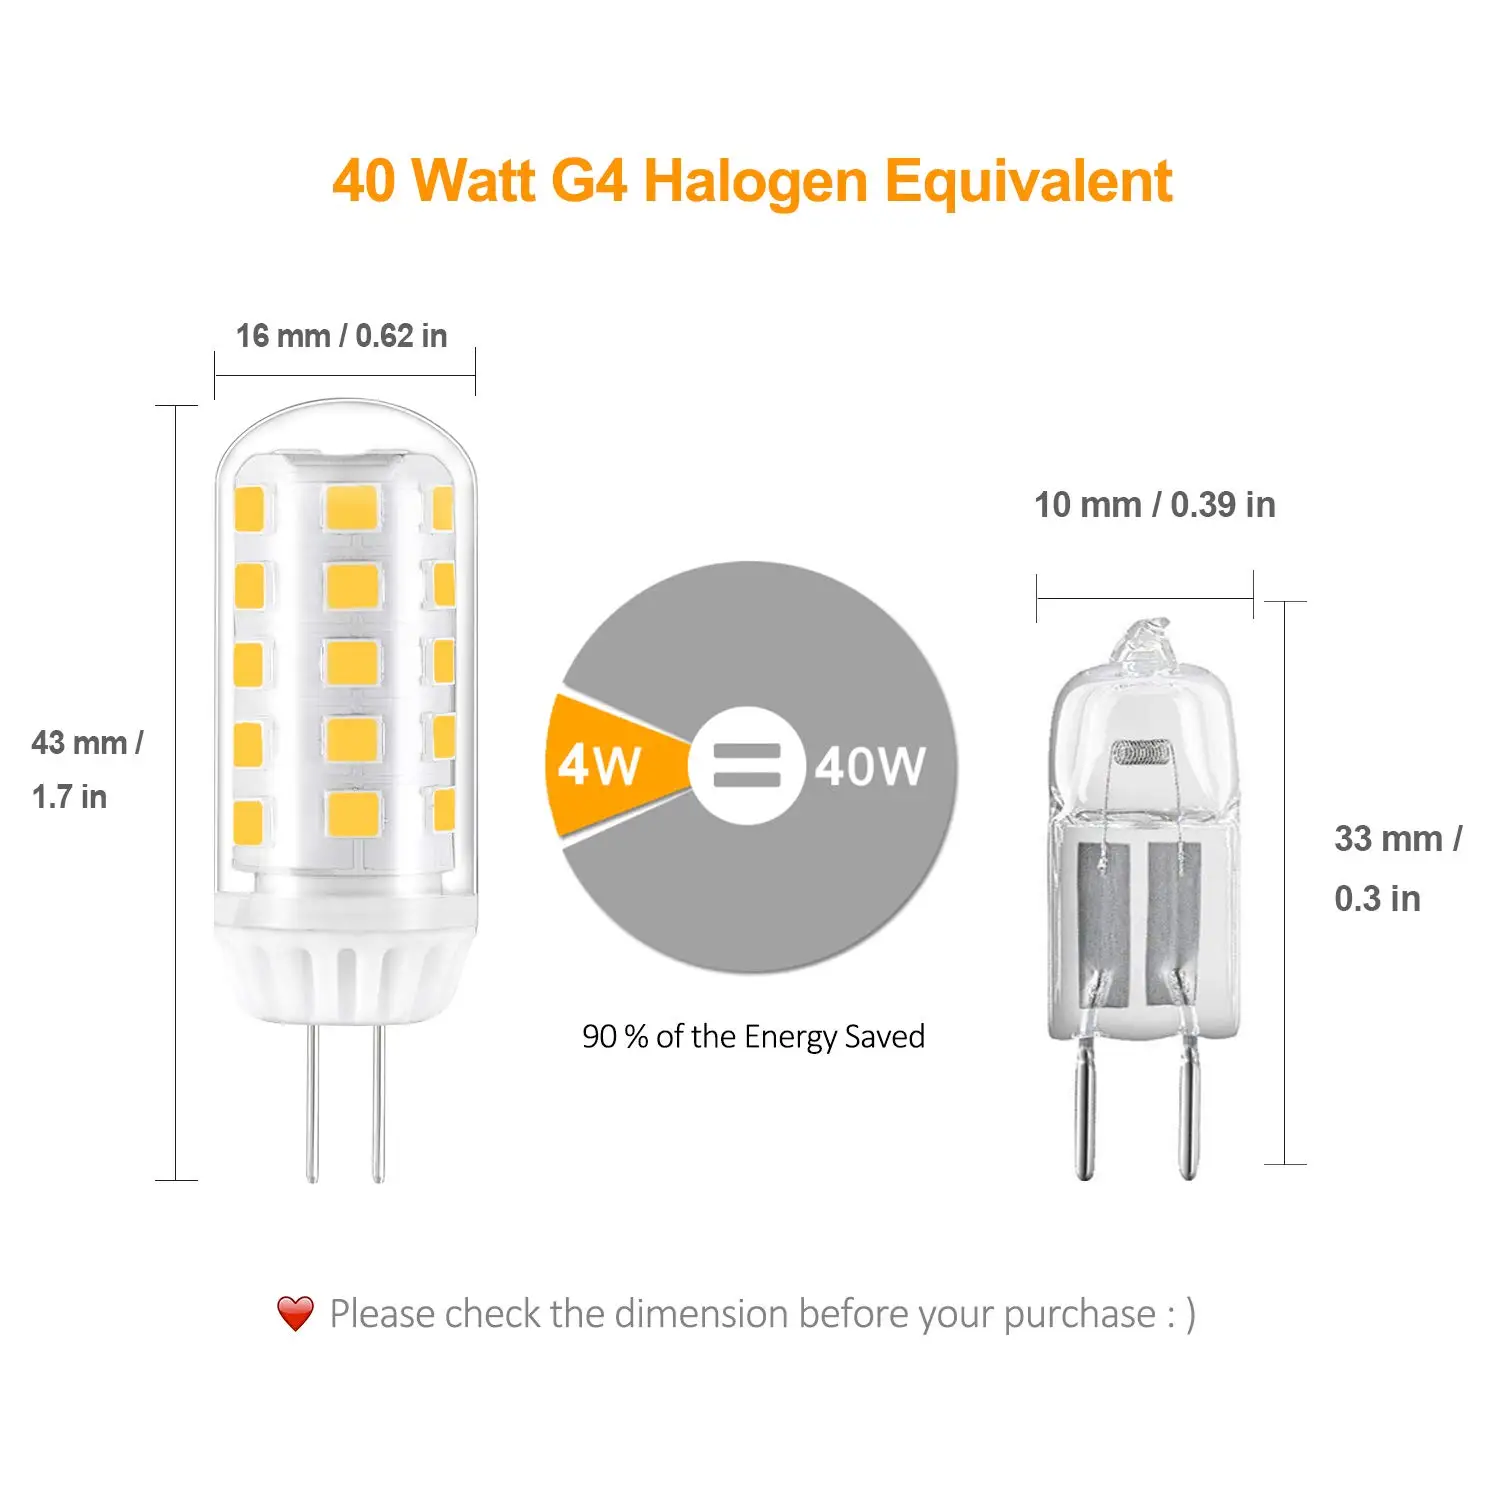 G4 Светодиодный светильник 4 Вт теплый белый G4 контактный цоколь замена лампы для 40 Вт галогенные Bulbs12V AC/DC с регулируемой яркостью упаковка из 5 Класс энергопотребления A